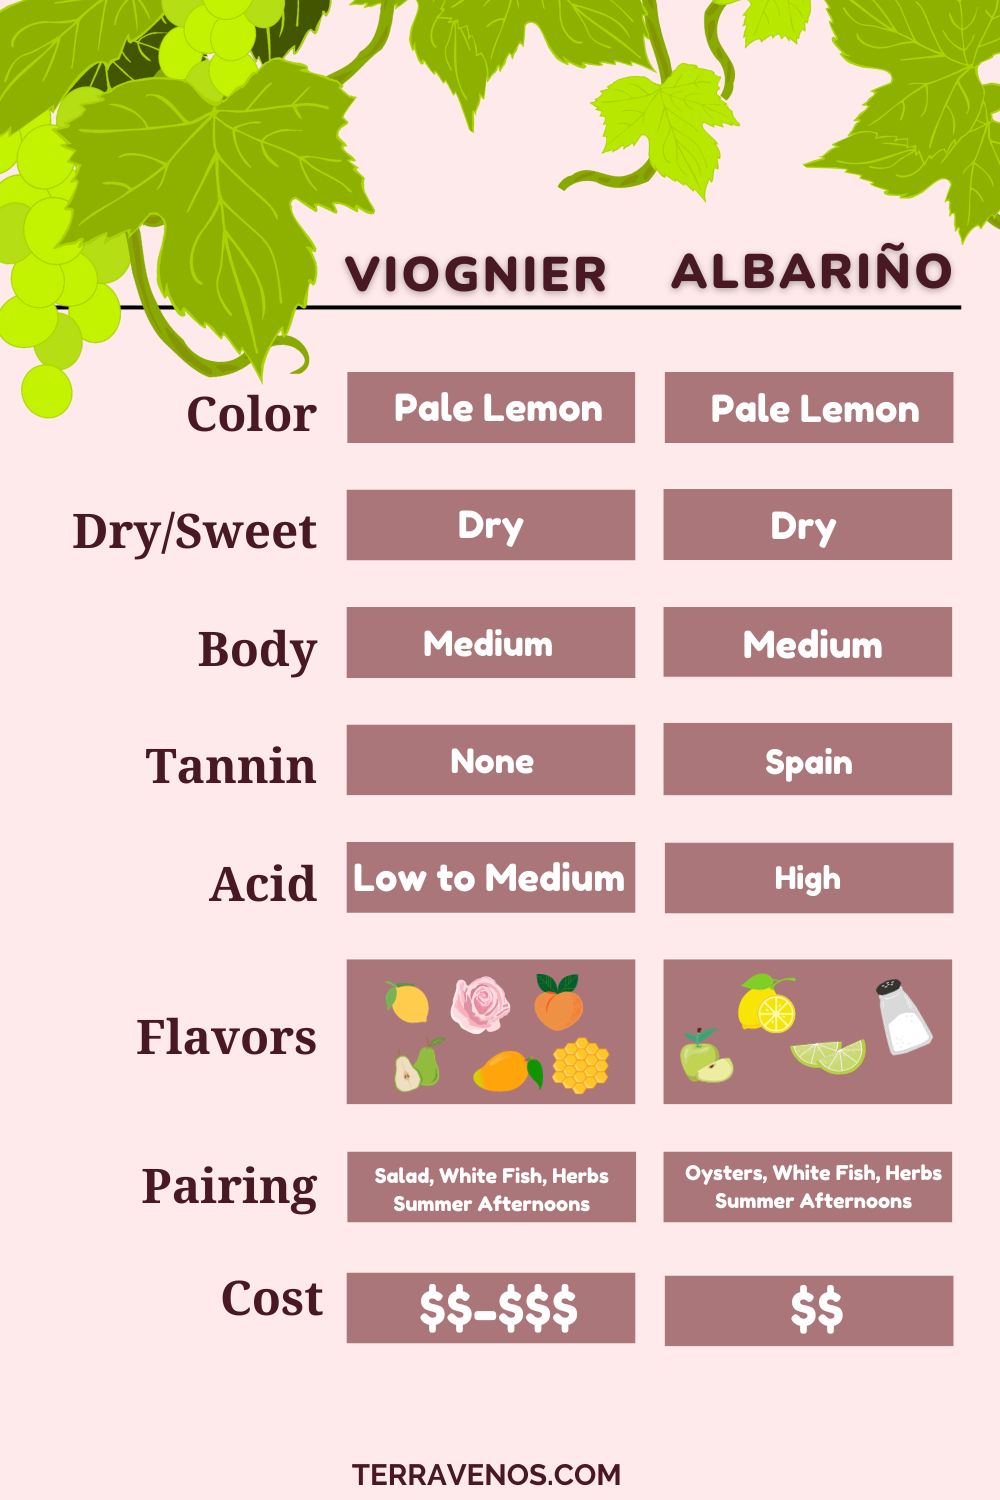 albarino-vs-viognier-wine-infographic-comparison